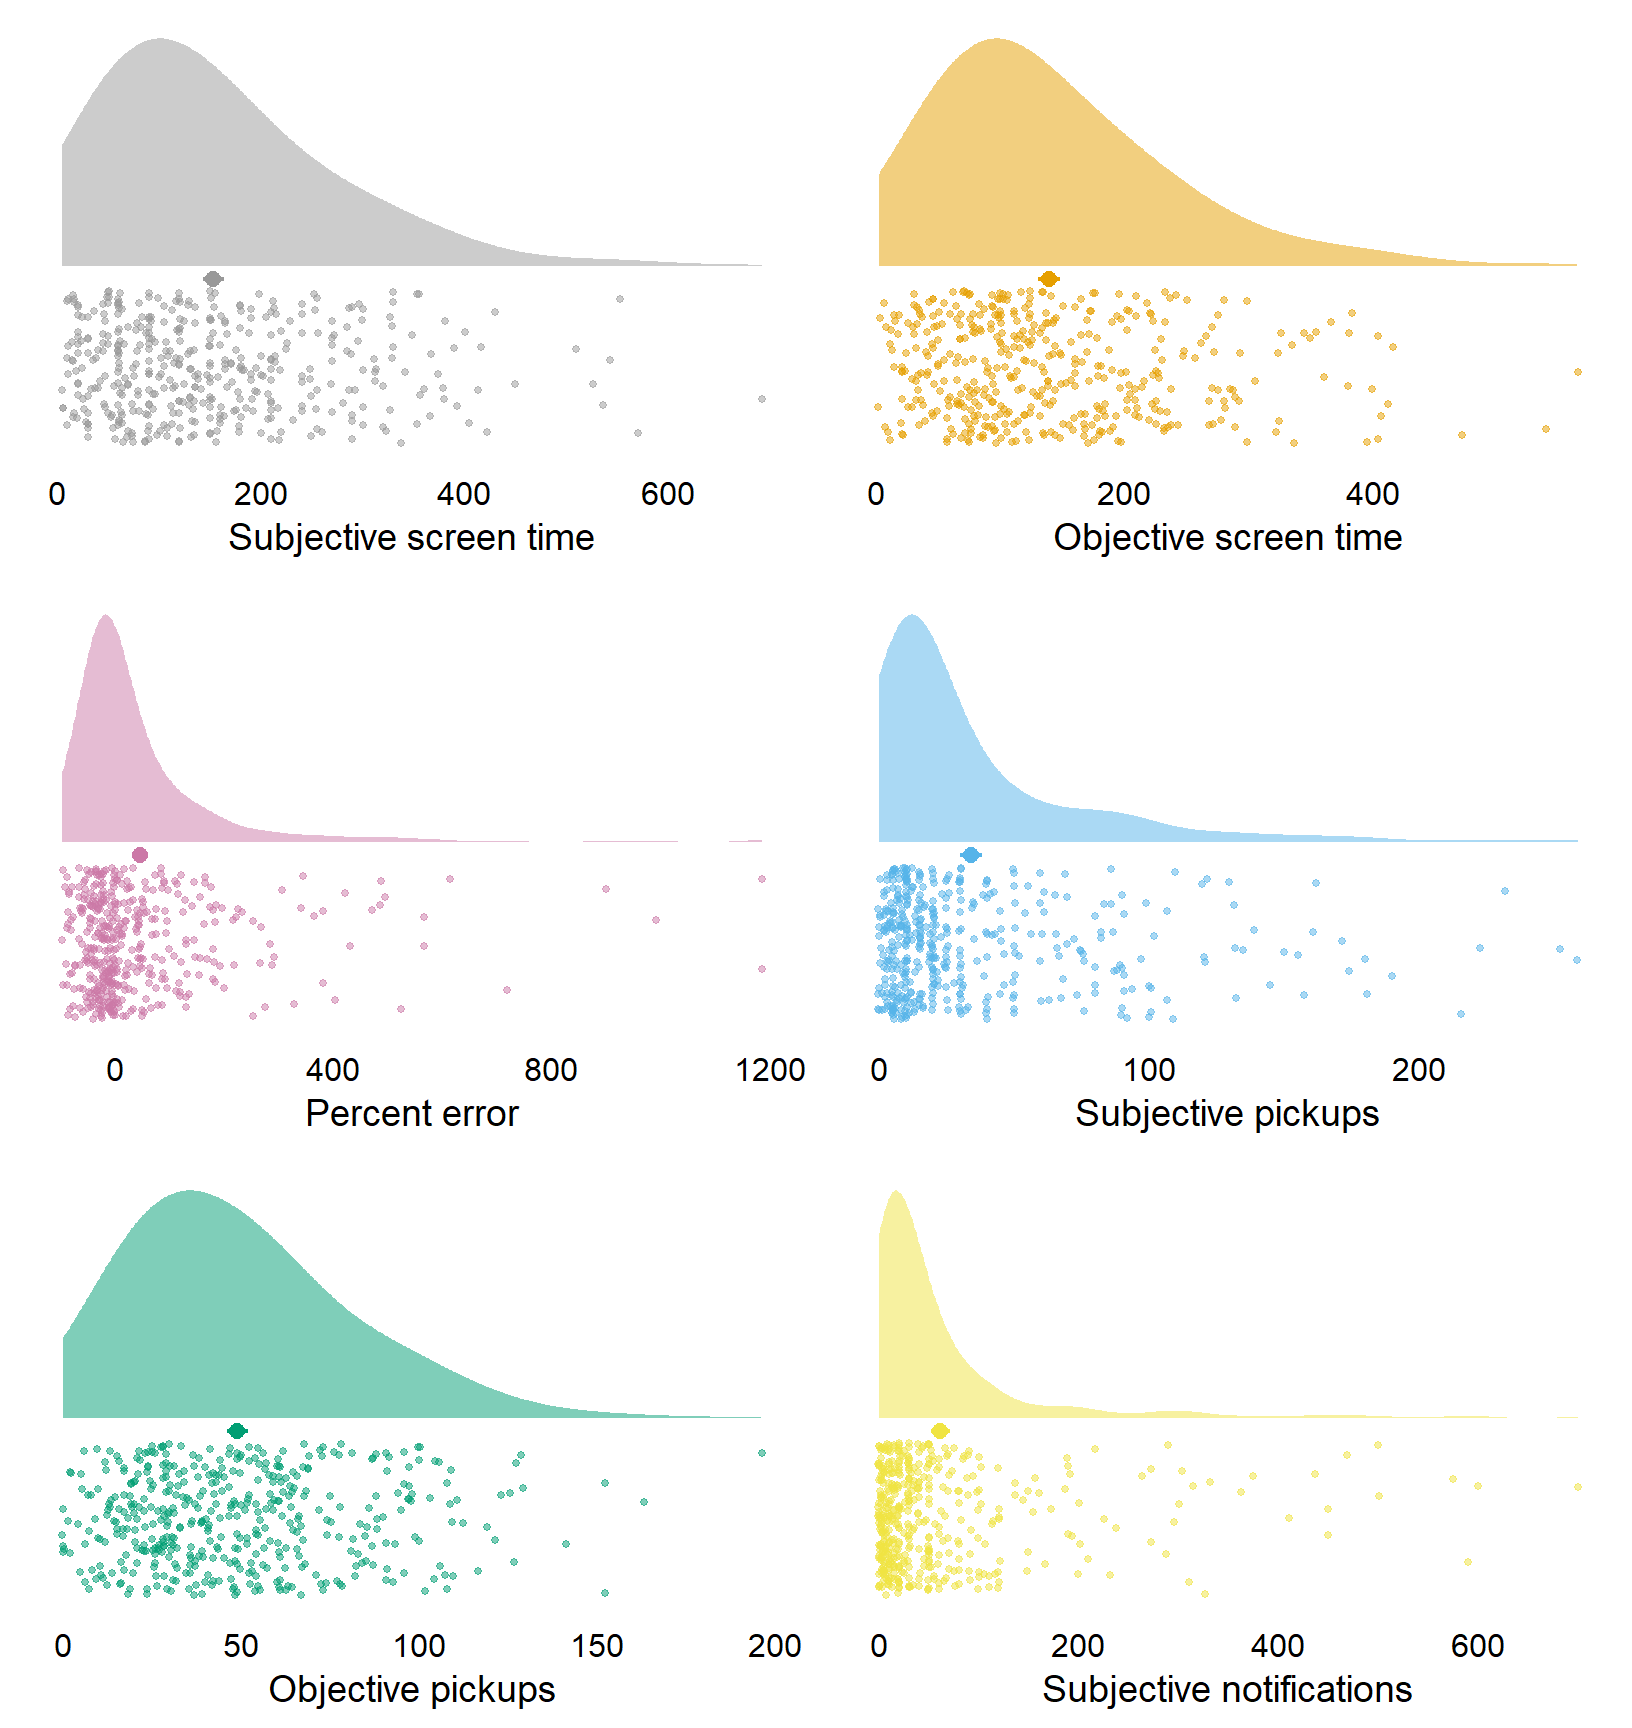 Distribution of social media variables